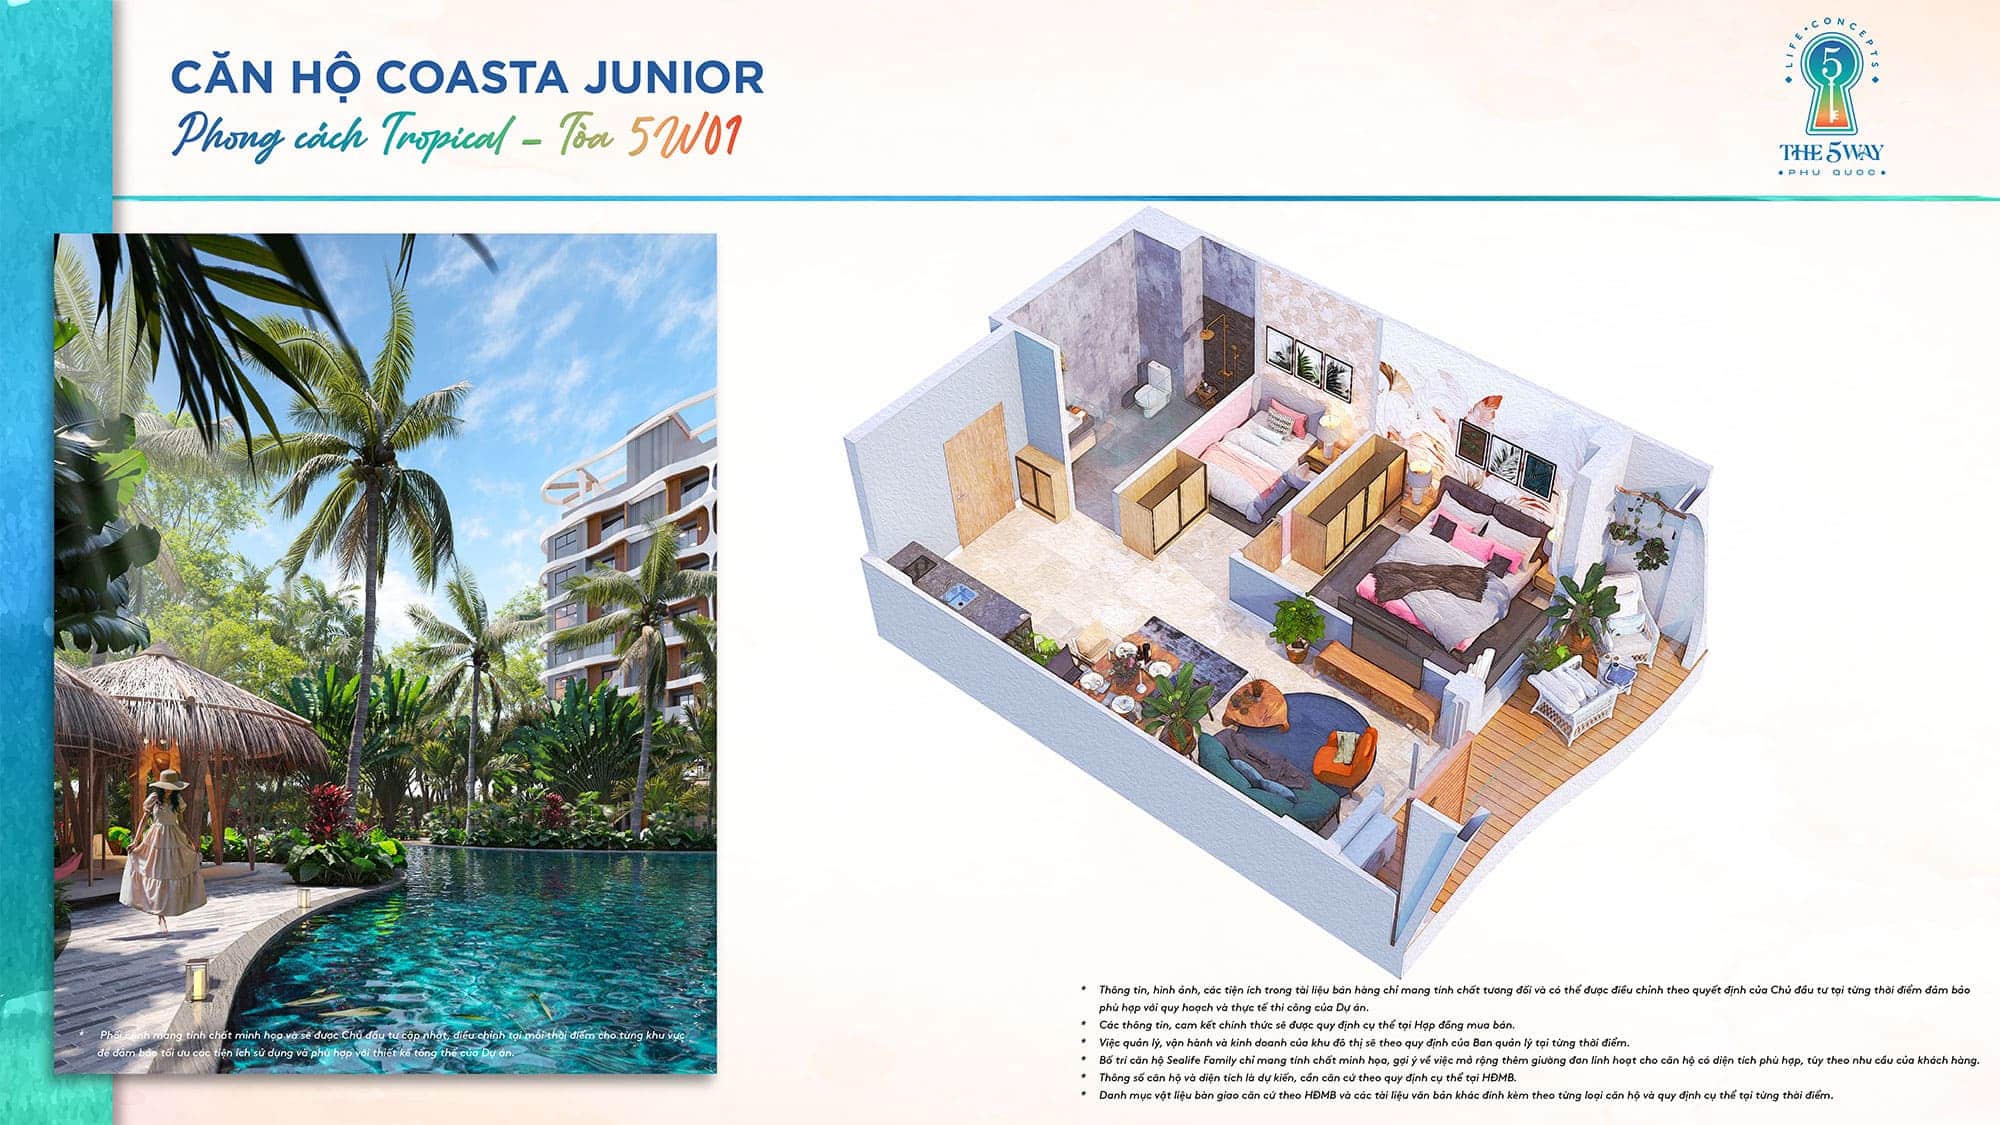 Layout bóc mái căn hộ Coasta Junior, Tòa 5W01 phong cách Tropical thuộc dự án The 5Way - Life Concepts.